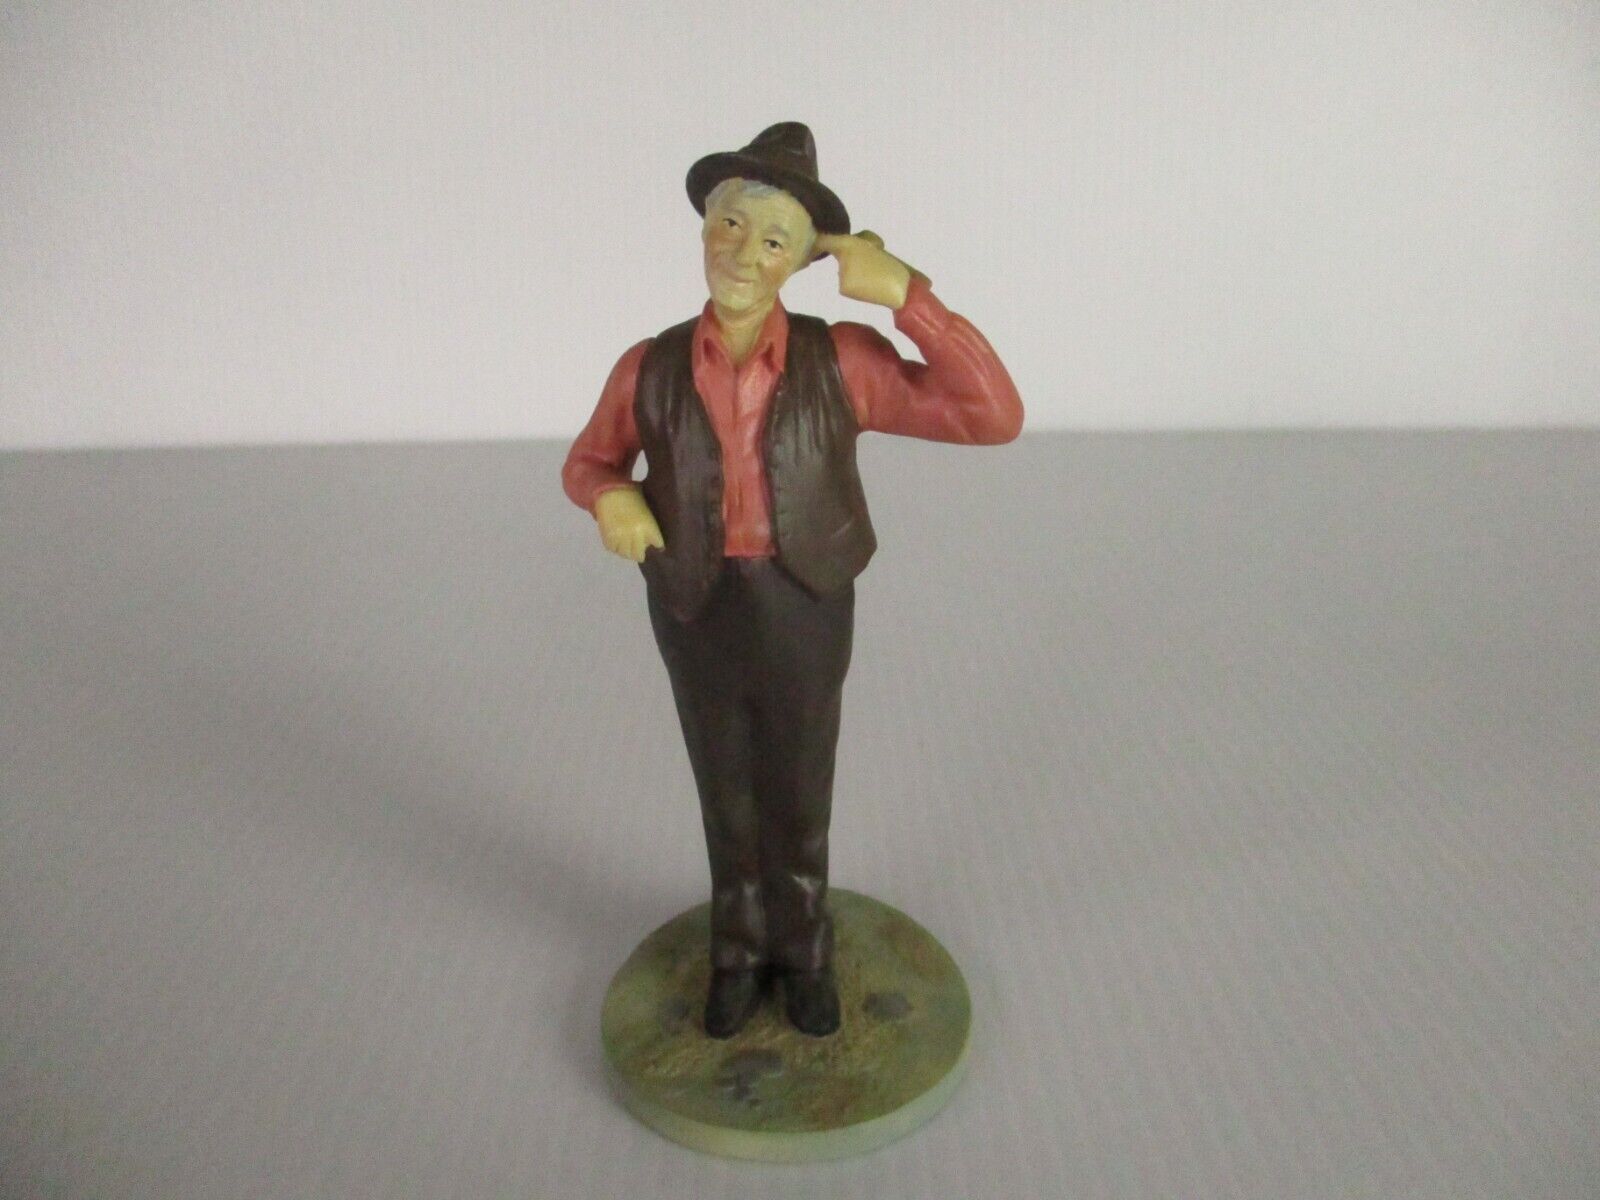 Vintage 1988 Franklin Mint Wizard of Oz Figurine Uncle Henry MGM Turner